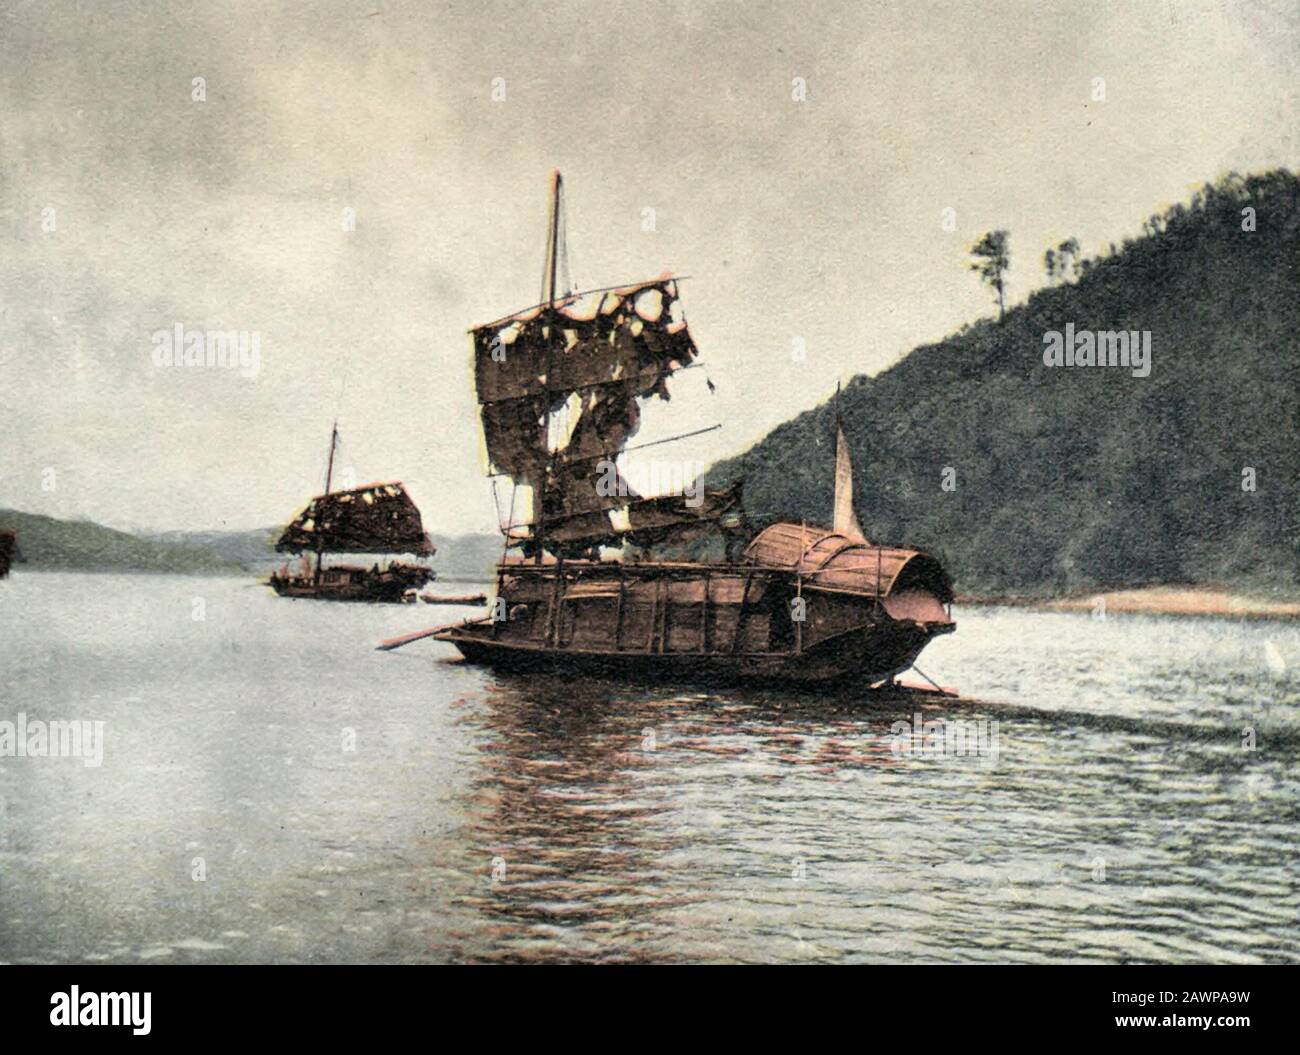 Chinesische Dschunks - EINE Häufige Sichtung an einem der großen Flüsse, etwa um 1900 Stockfoto